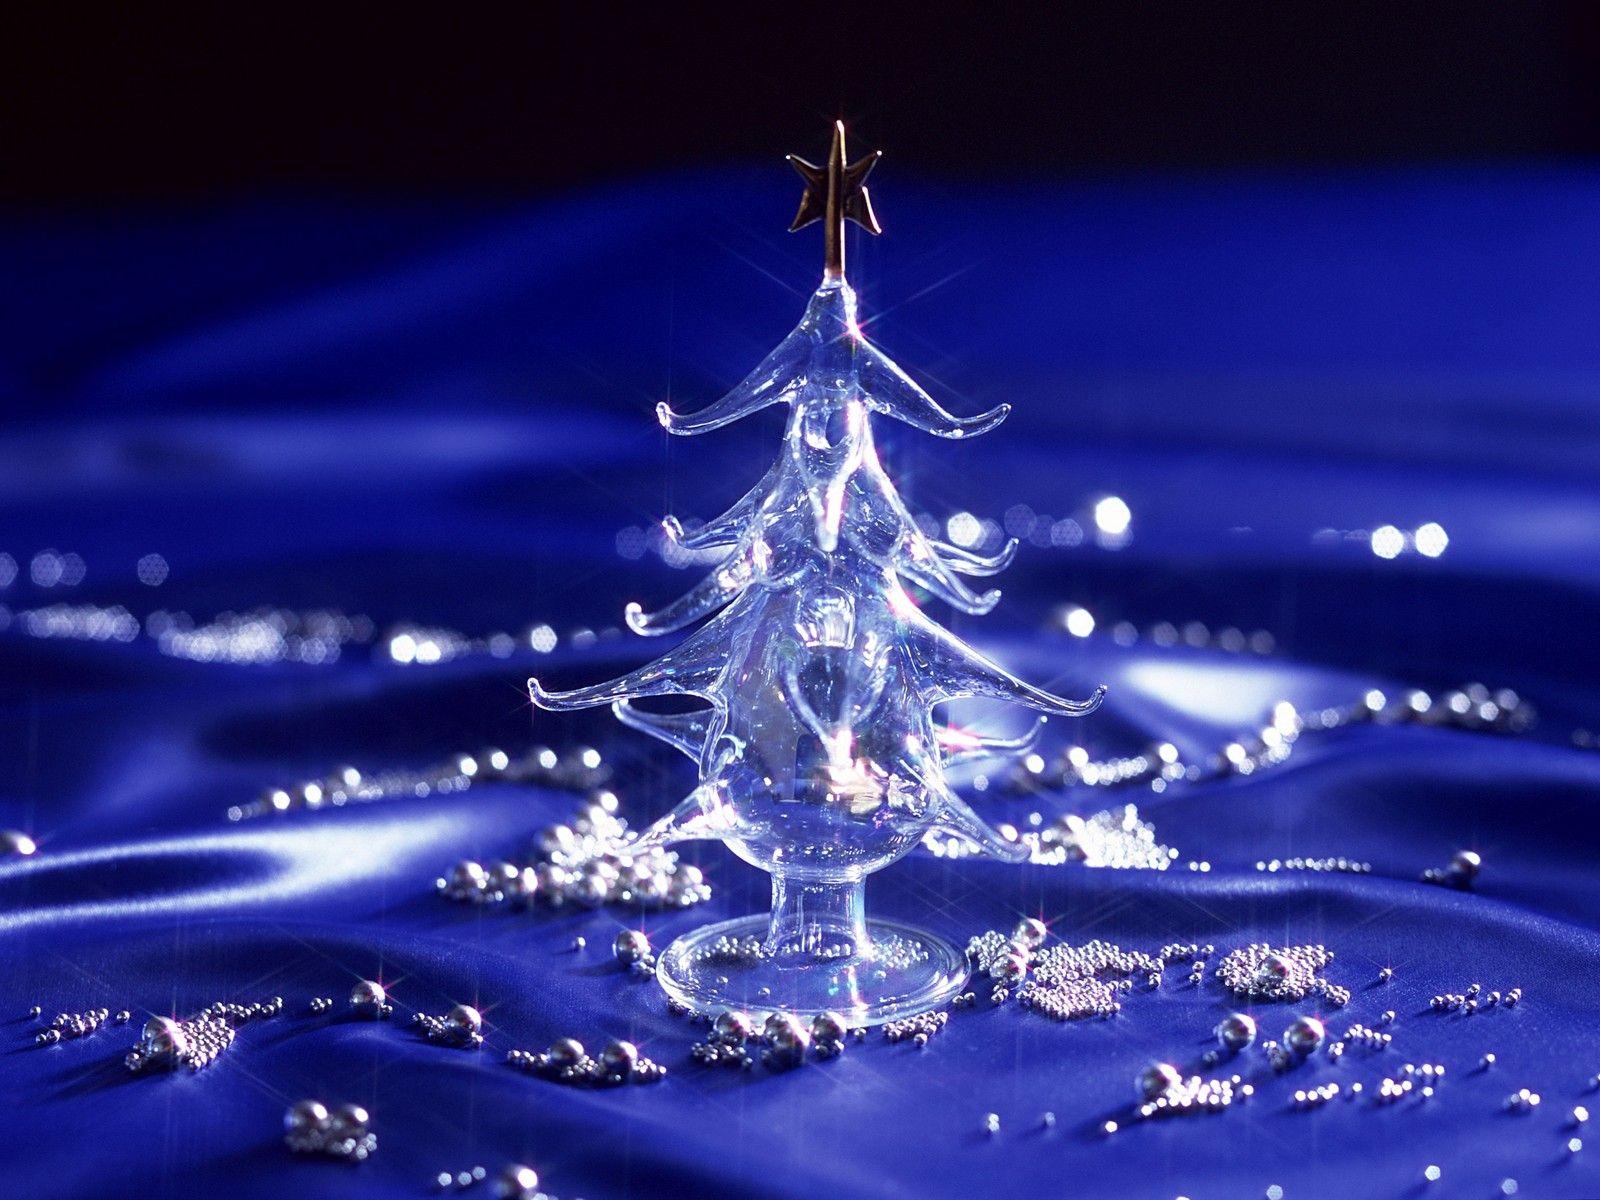 Crystal Christmas Tree. Christmas desktop wallpaper, Christmas live wallpaper, Christmas wallpaper free